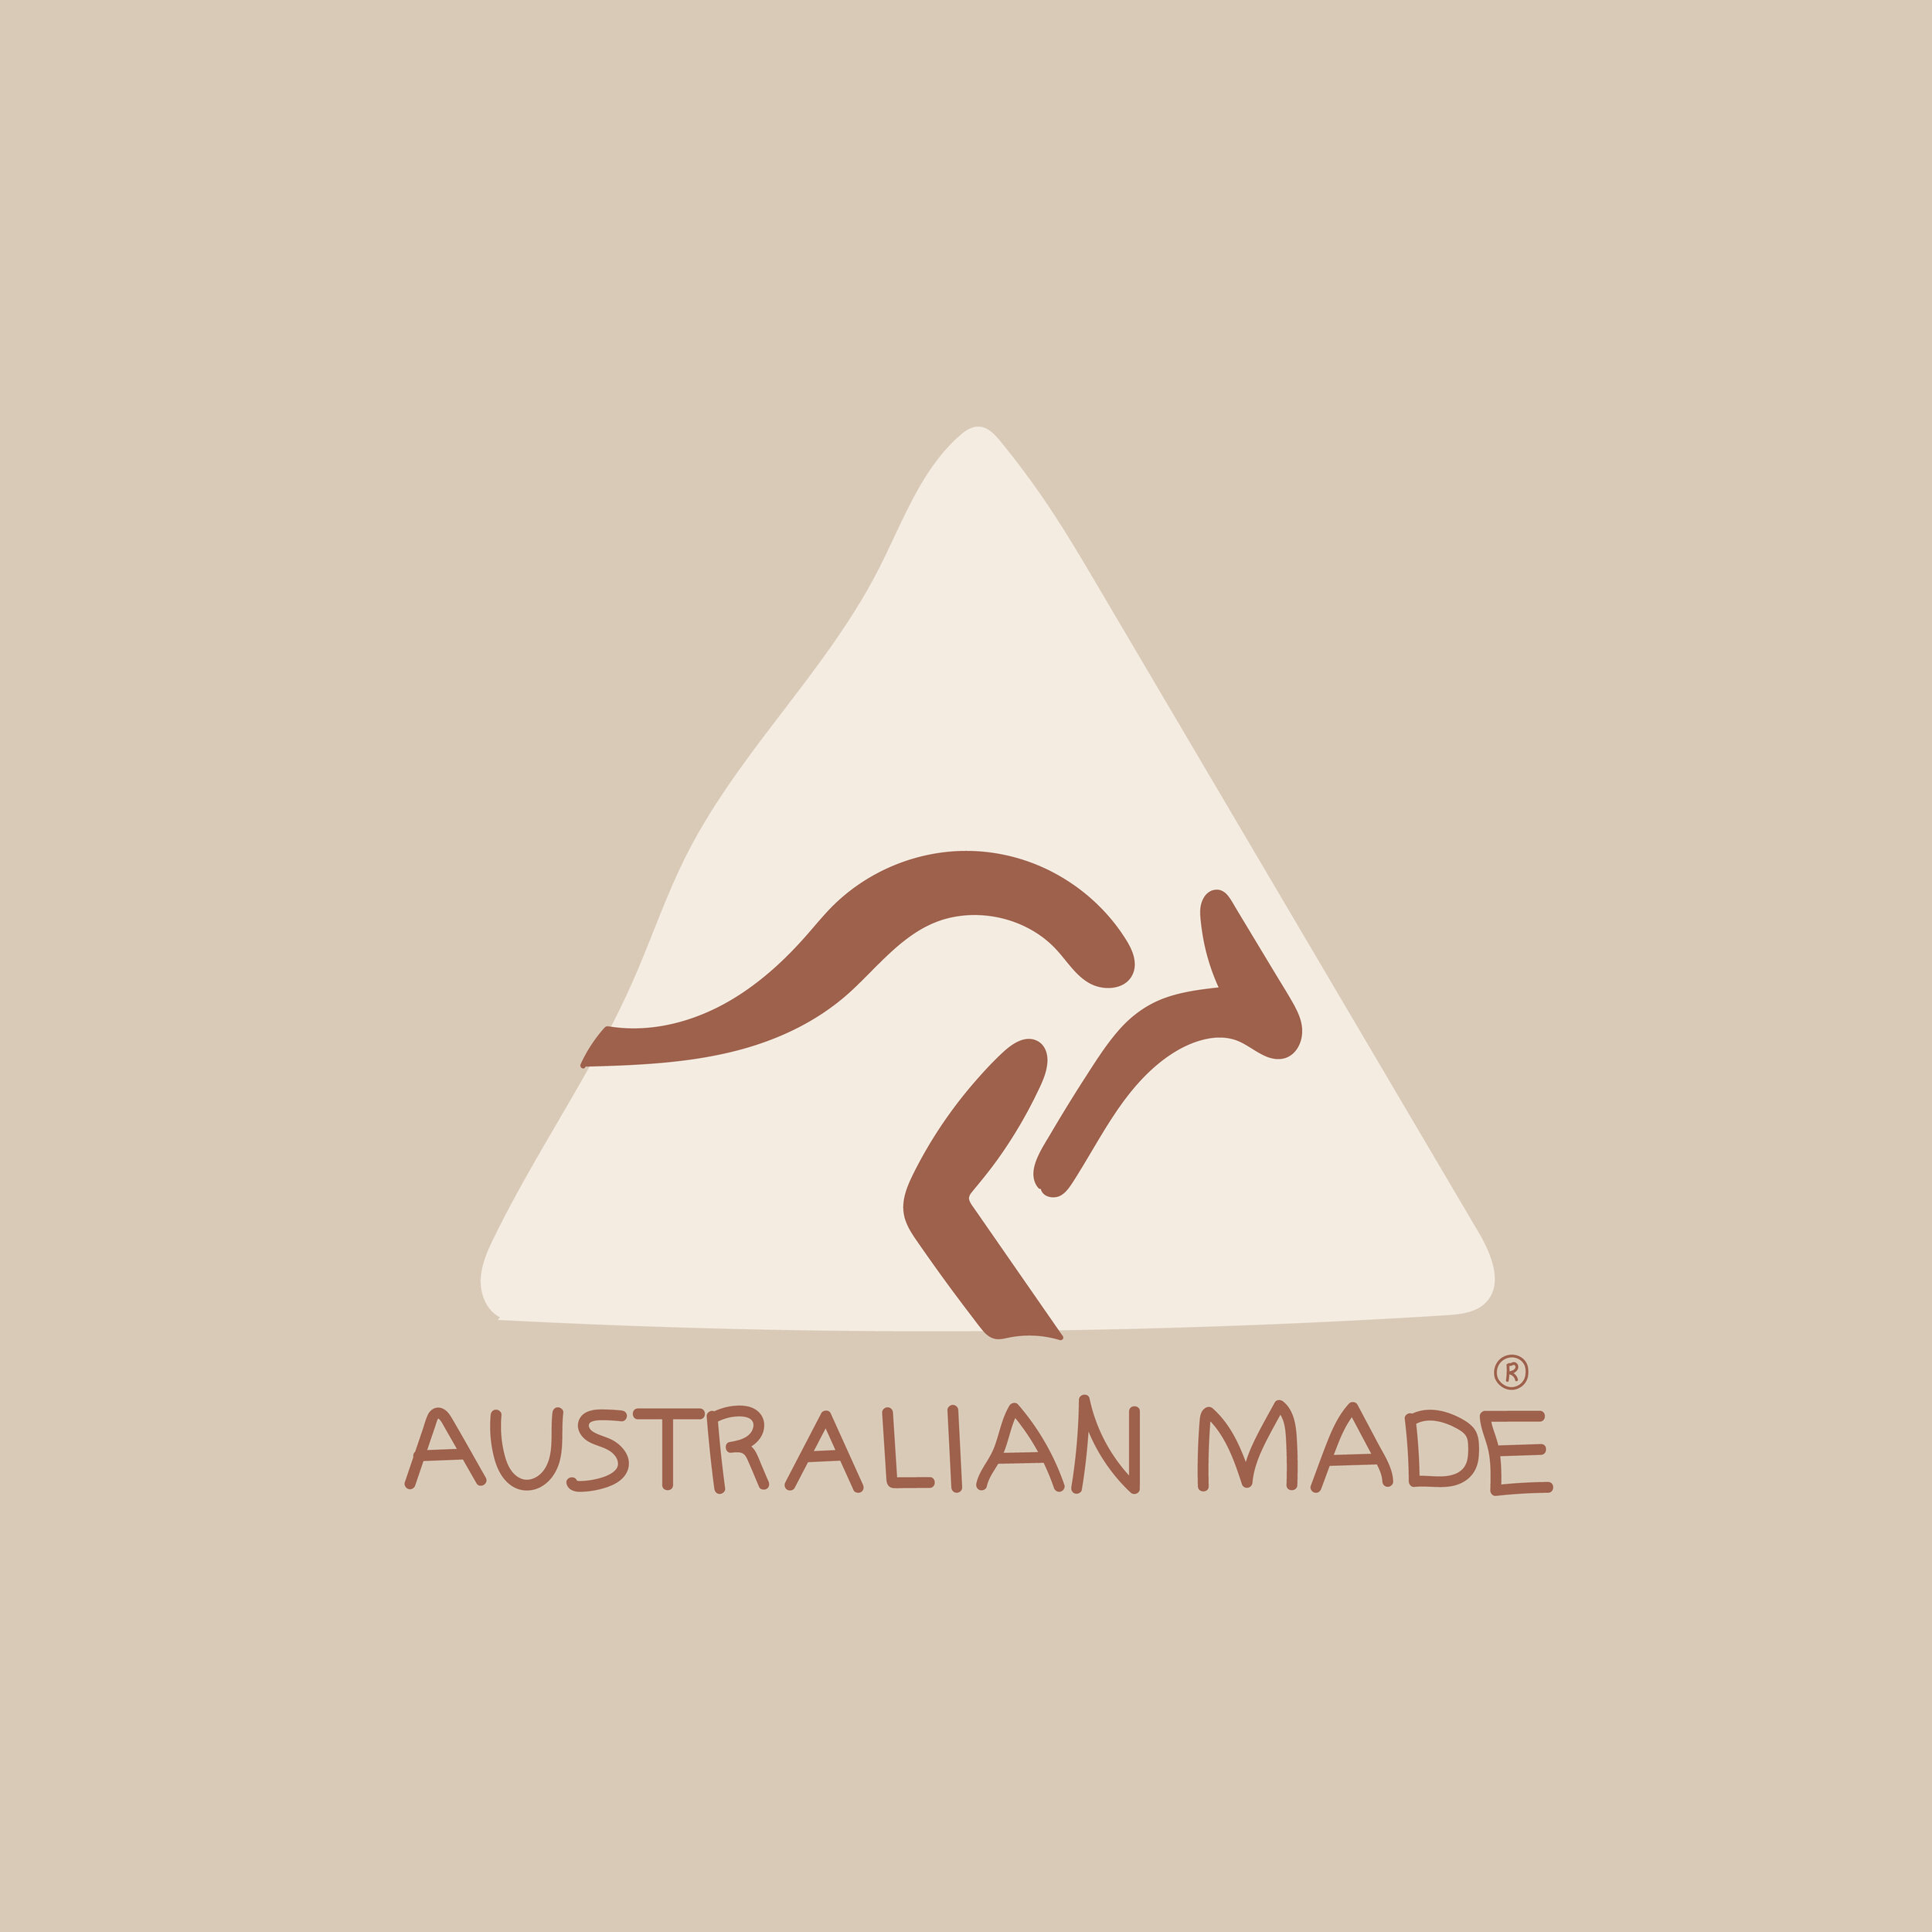 Australian-Made-01.jpg